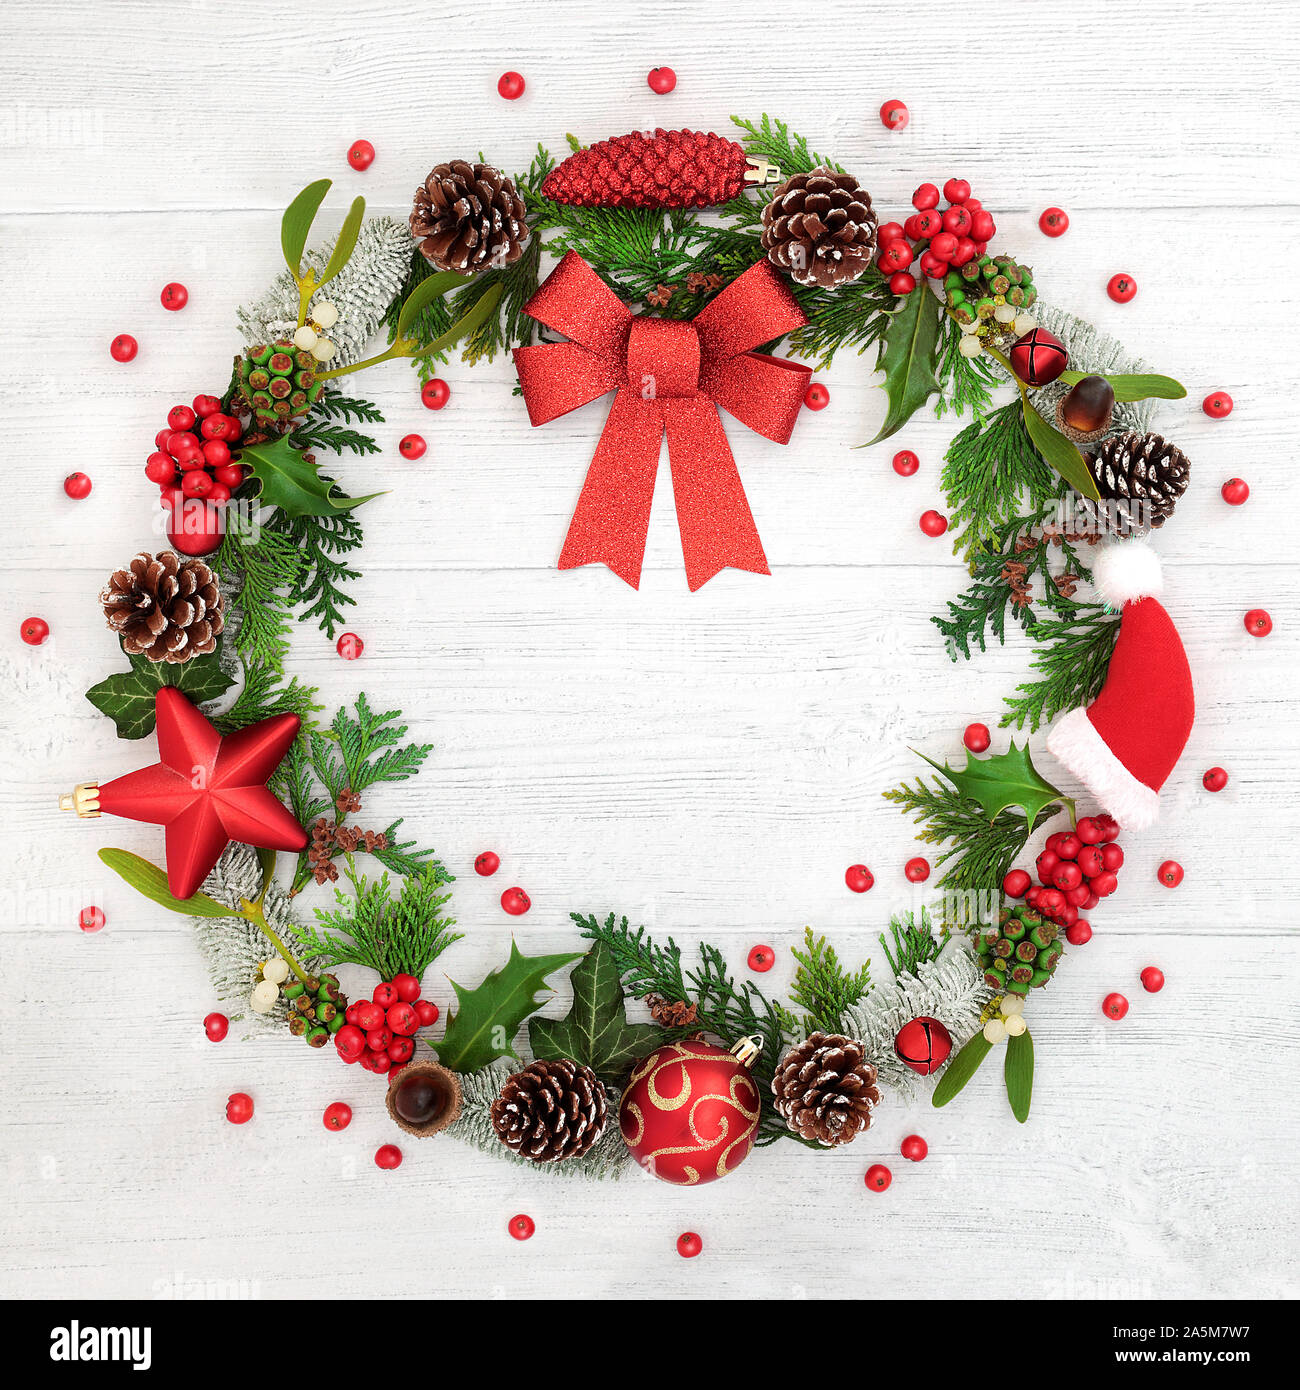 Couronne de Noël avec red bow, décorations babiole, flore hiver et lâche des baies de houx sur fond de bois rustique. Banque D'Images